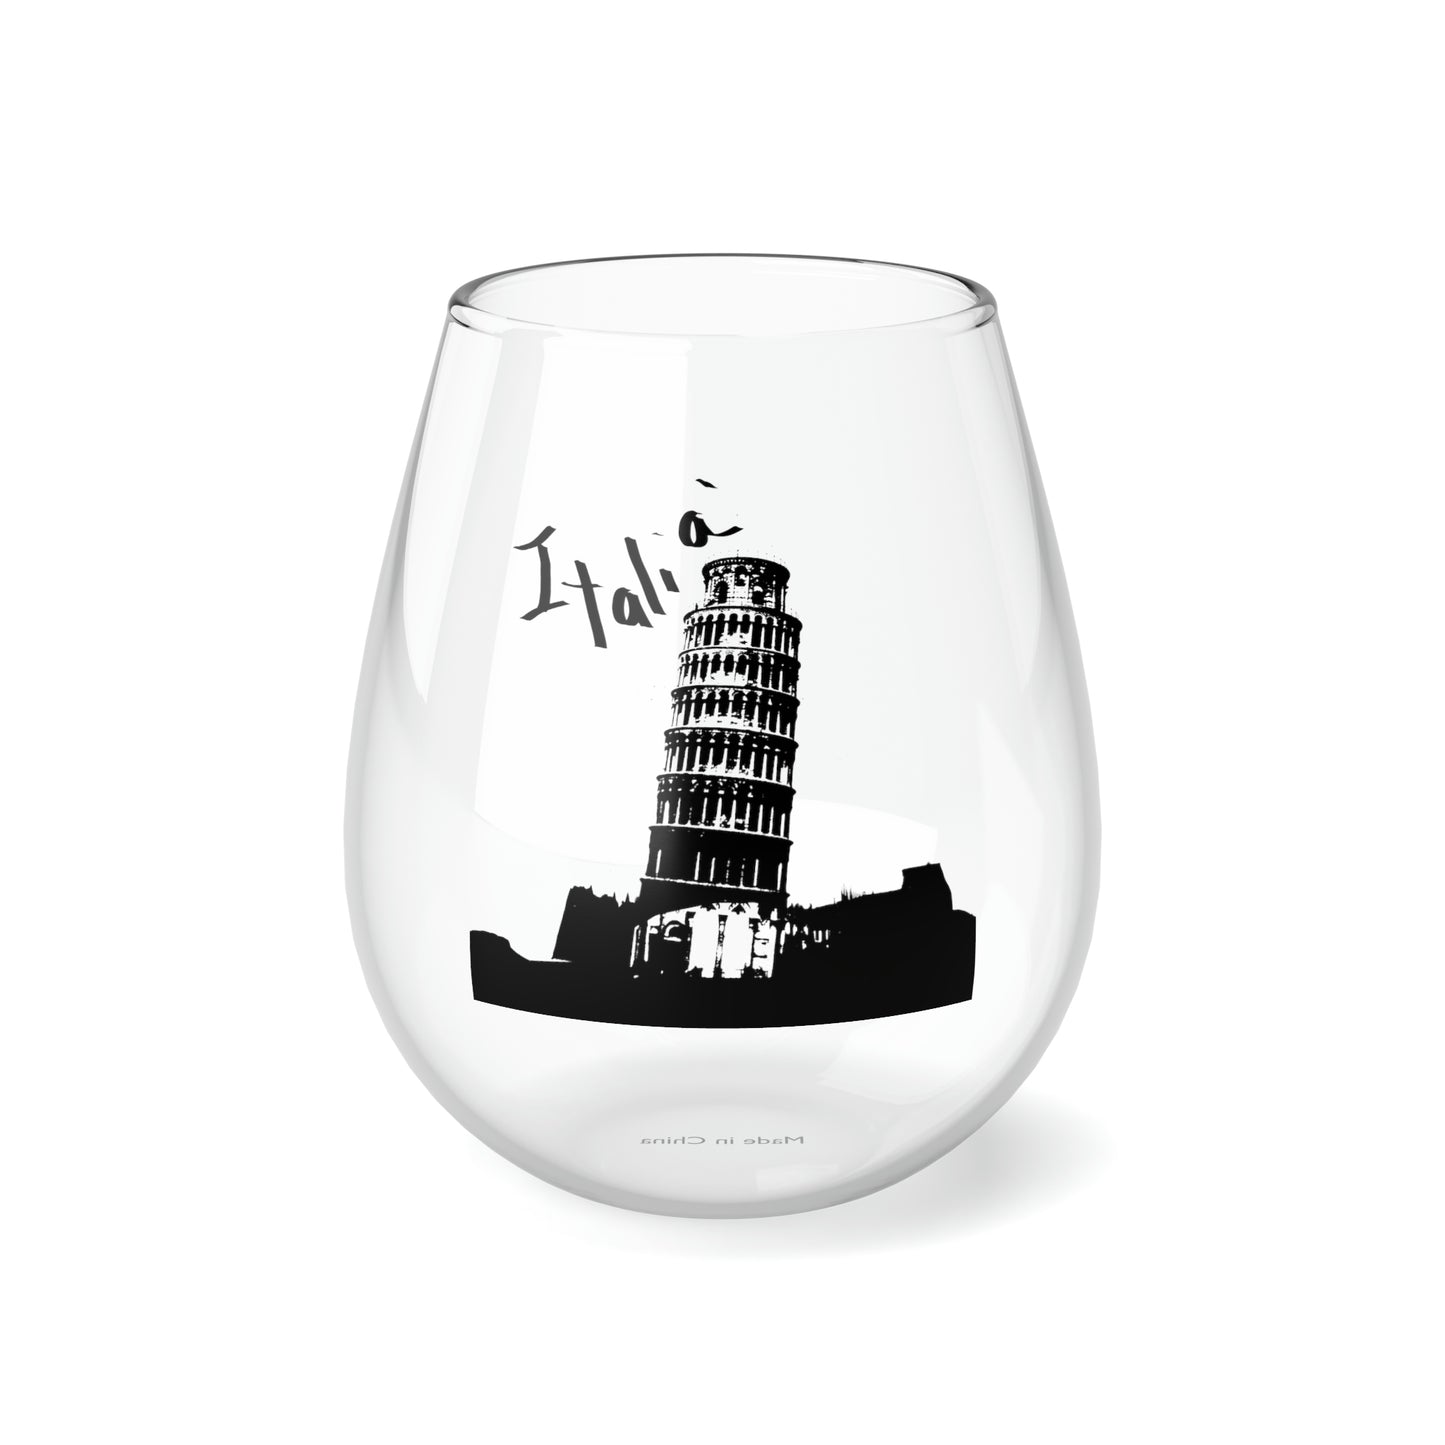 Pisa Italia Stemless Wine Glass, 11.75oz